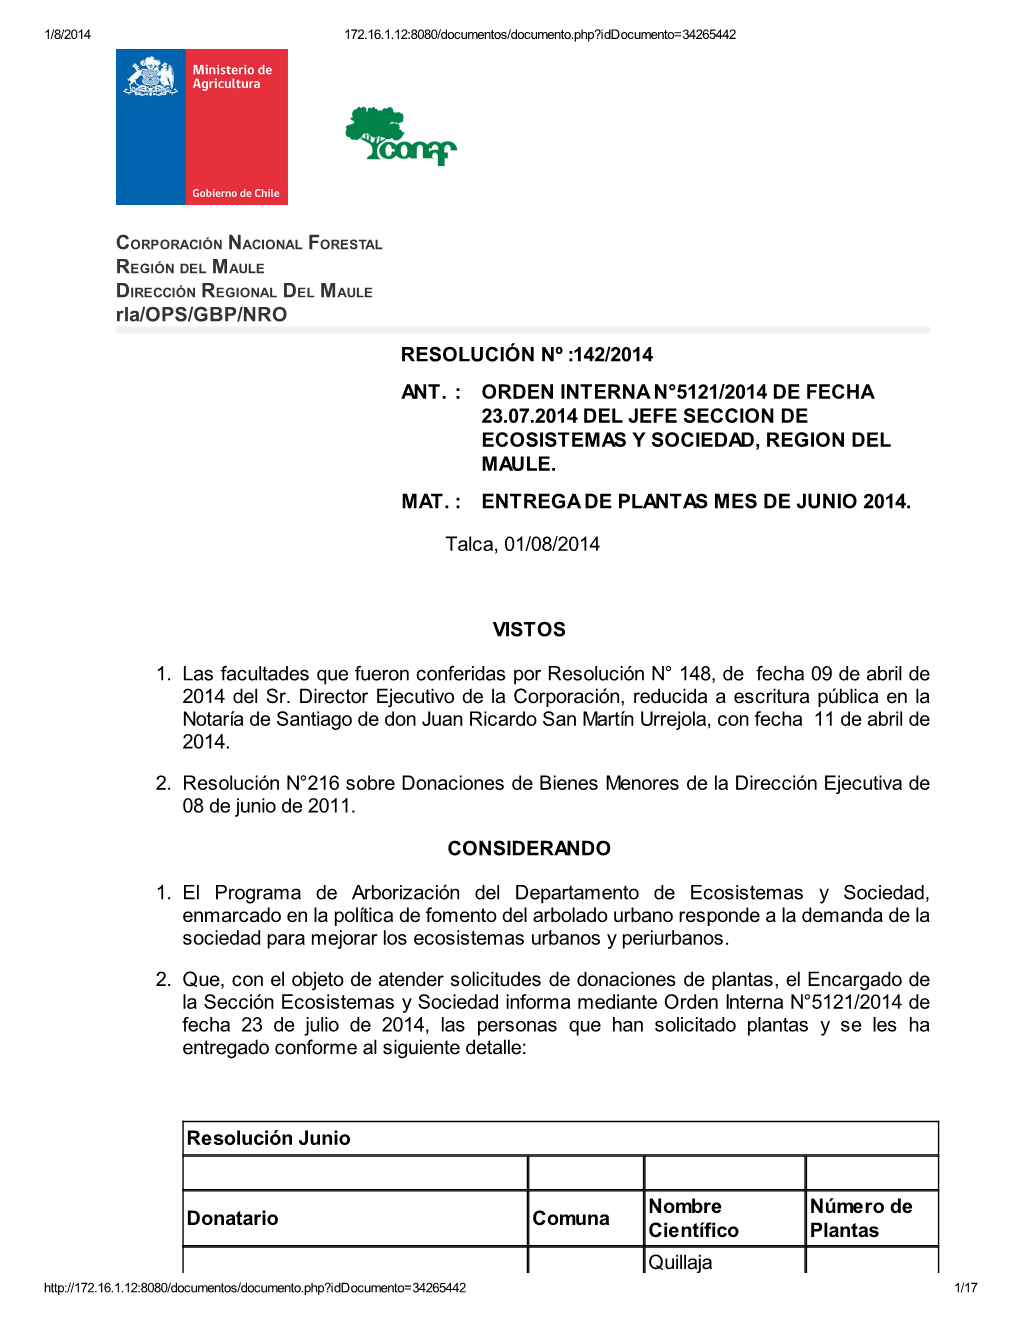 142/2014 Ant. : Orden Interna N°5121/2014 De Fecha 23.07.2014 Del Jefe Seccion De Ecosistemas Y Sociedad, Region Del Maule